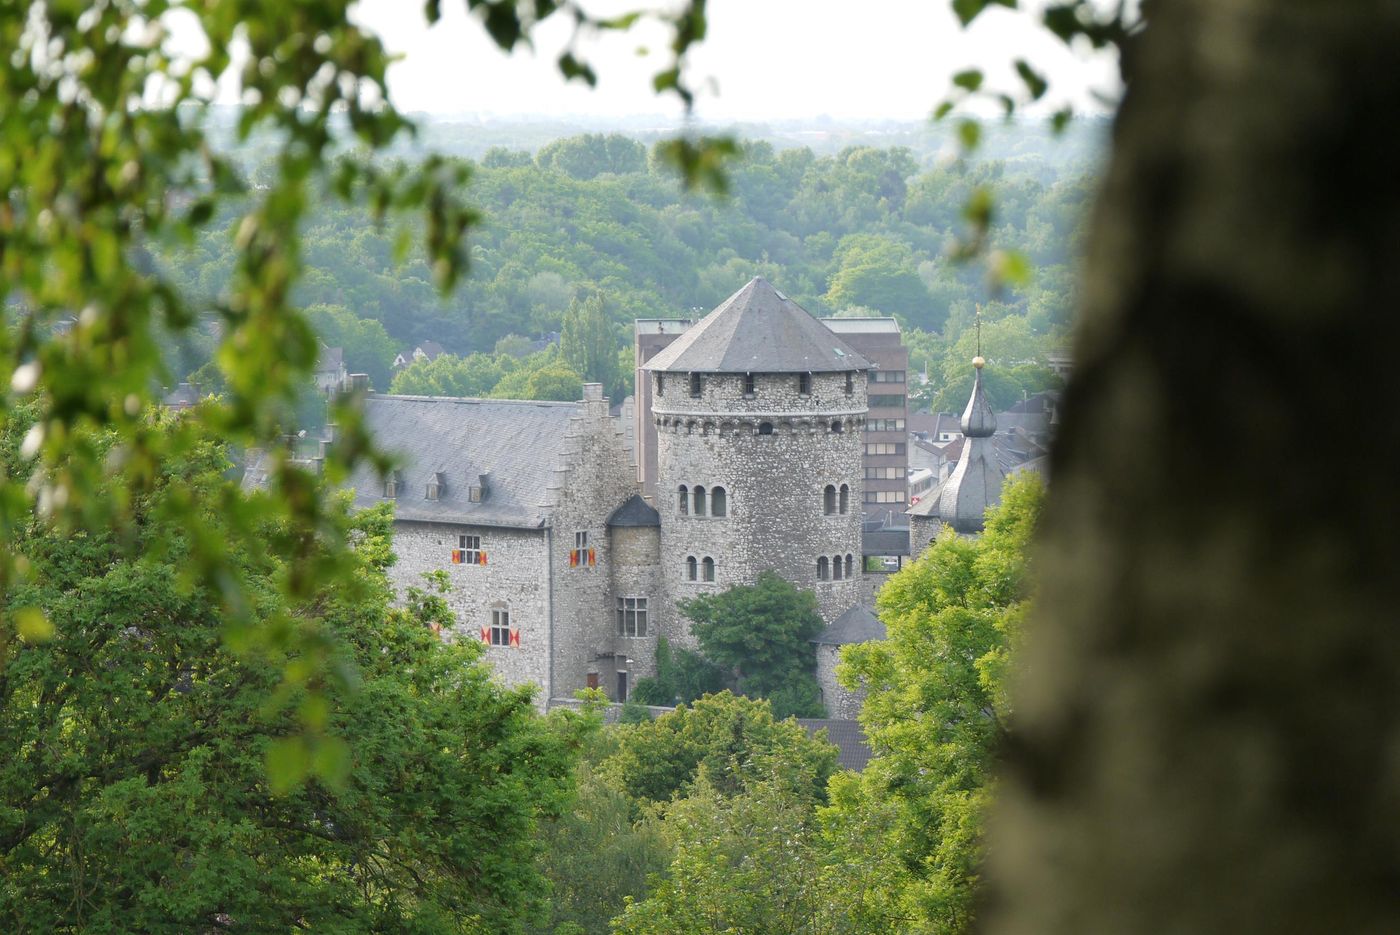 Mittelalterliches Flair auf der Burg Stolberg erleben